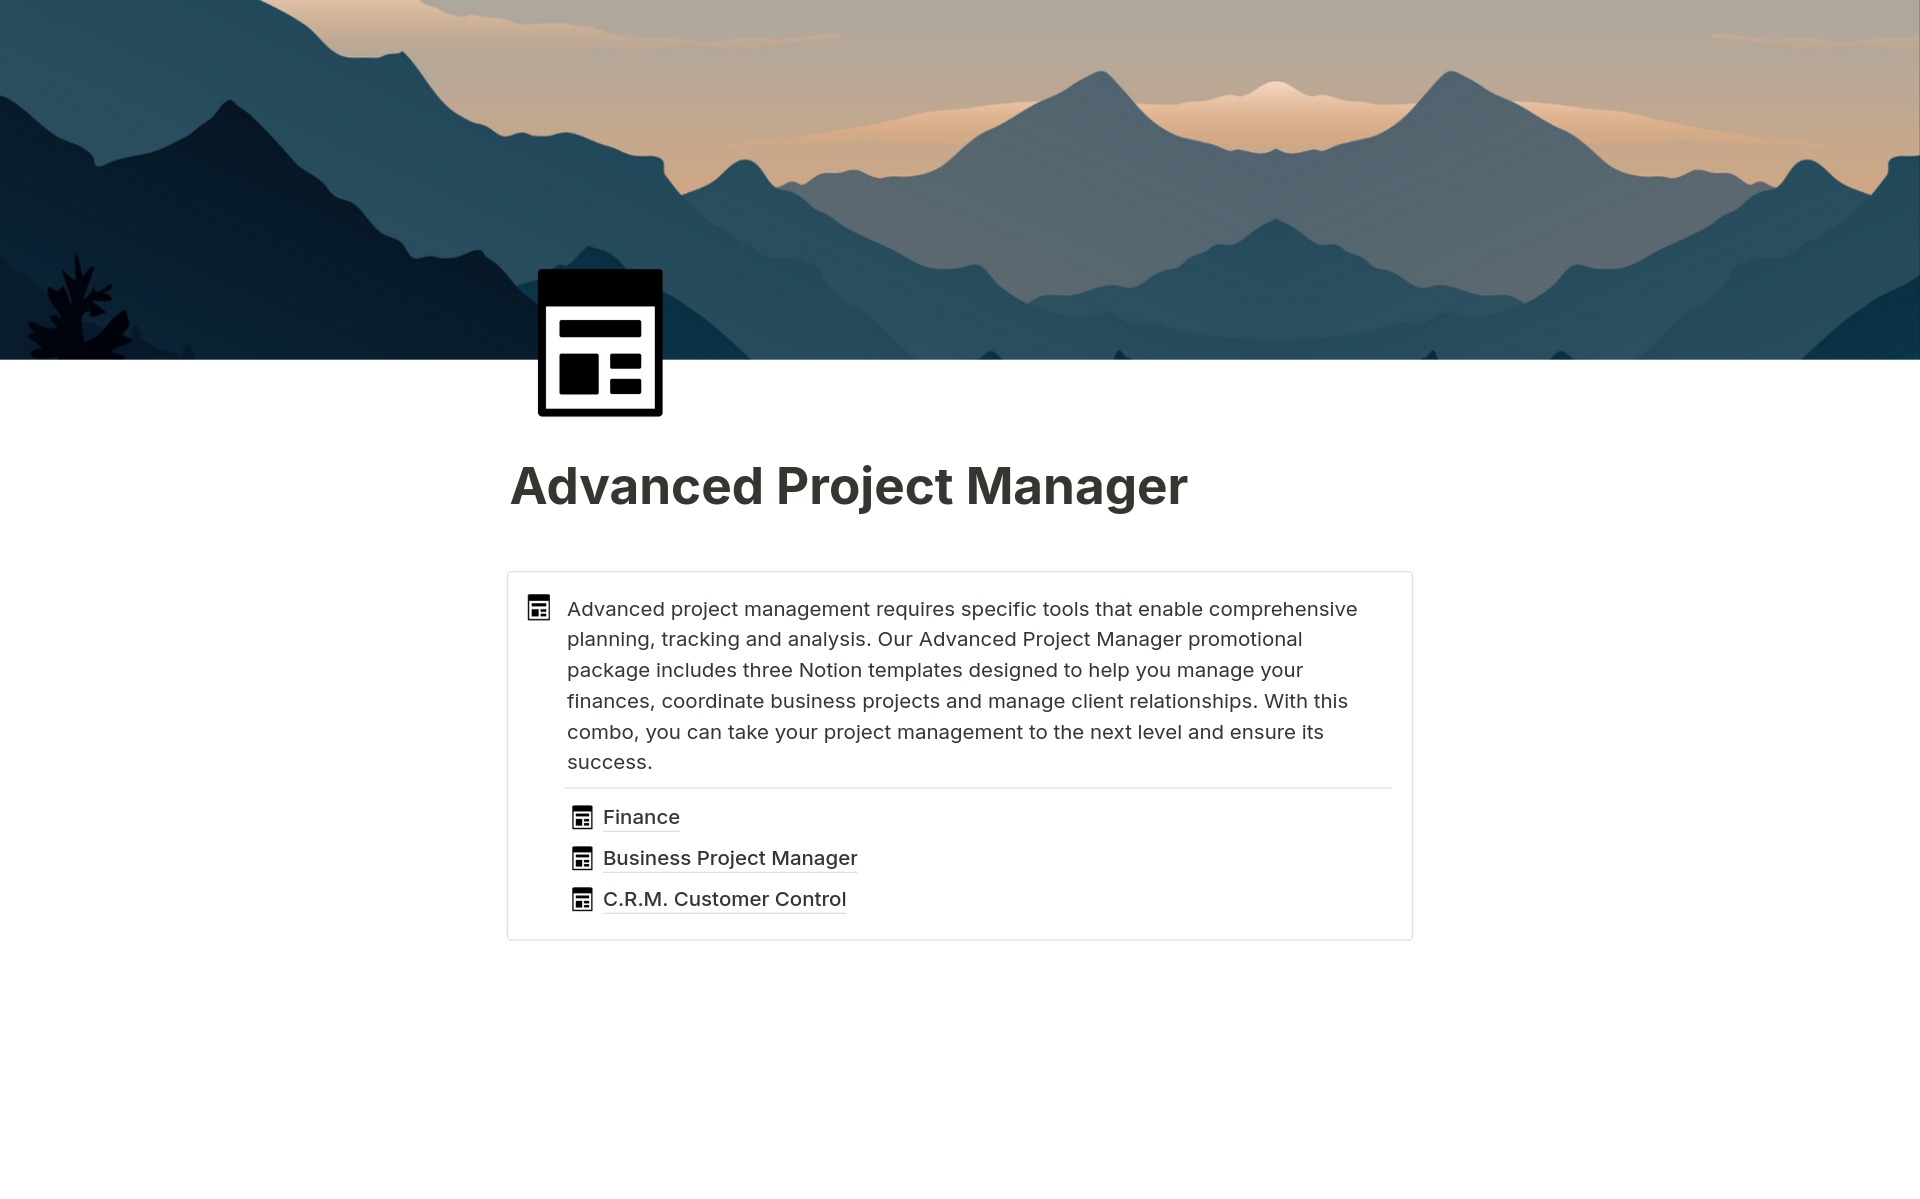 Vista previa de plantilla para Advanced Project Manager 